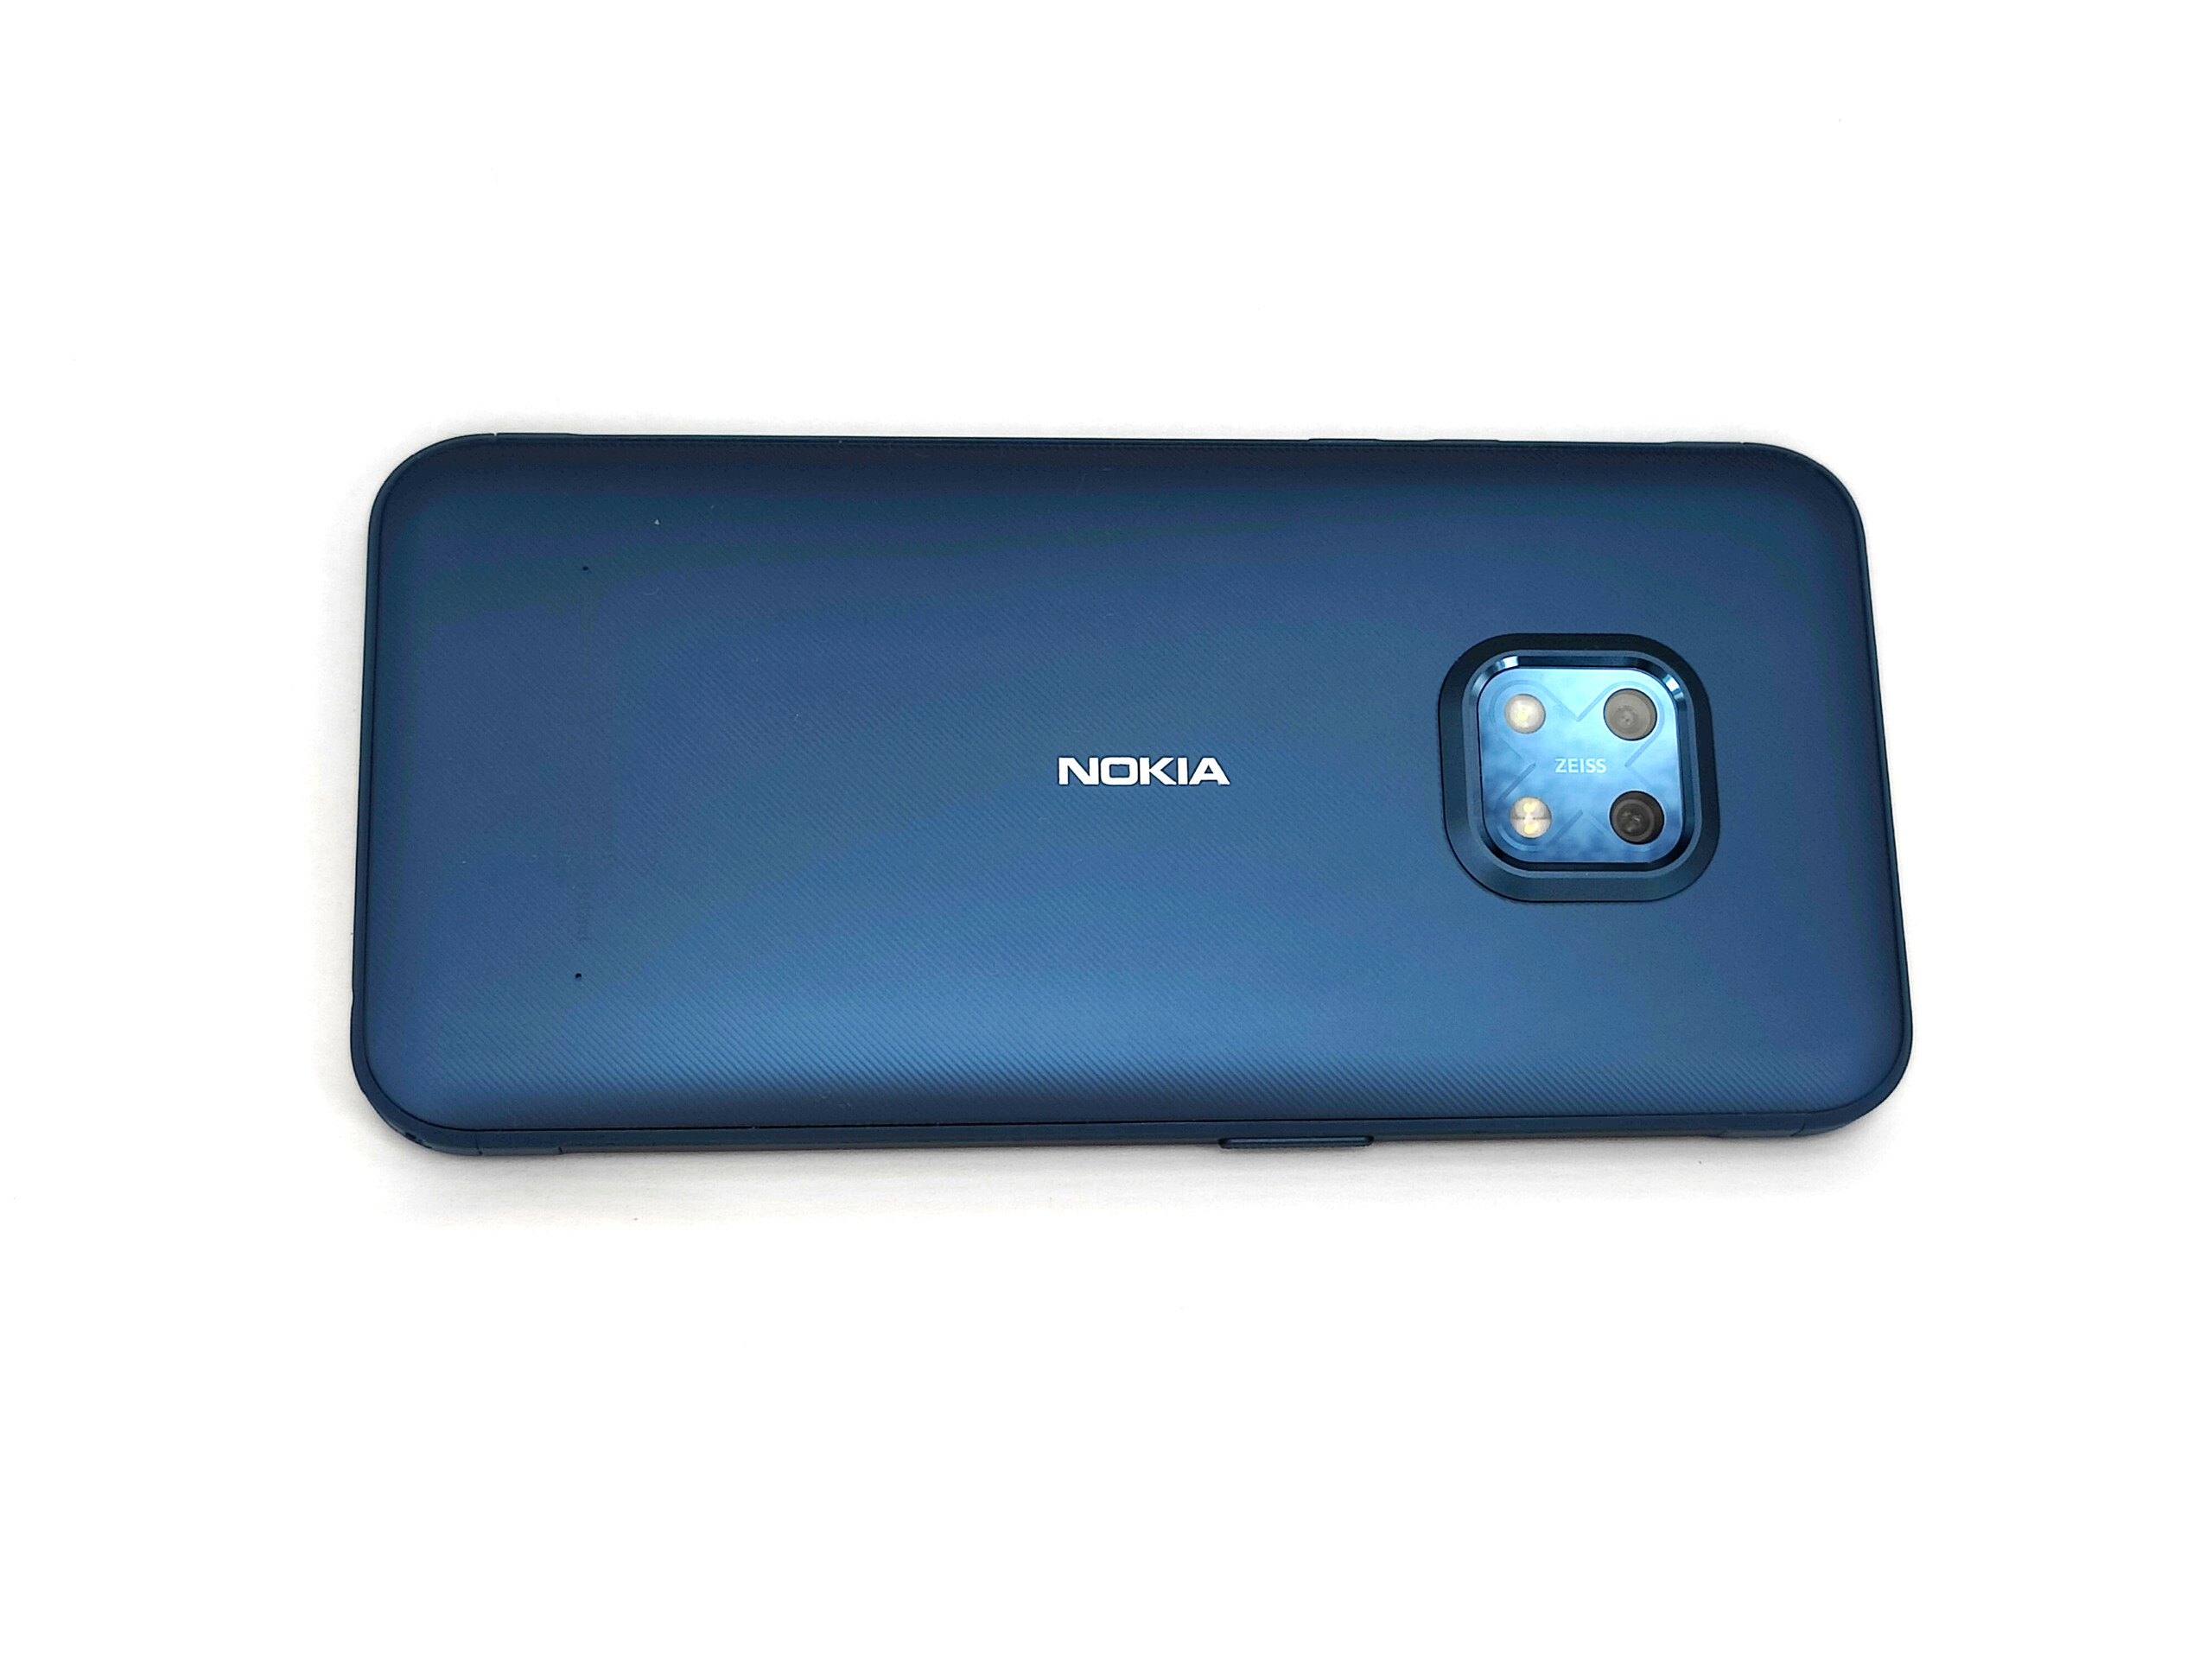 Original Nokia c5-00 carcasa cámara cubierta Camera cover 3,2 Mpix blanco White 